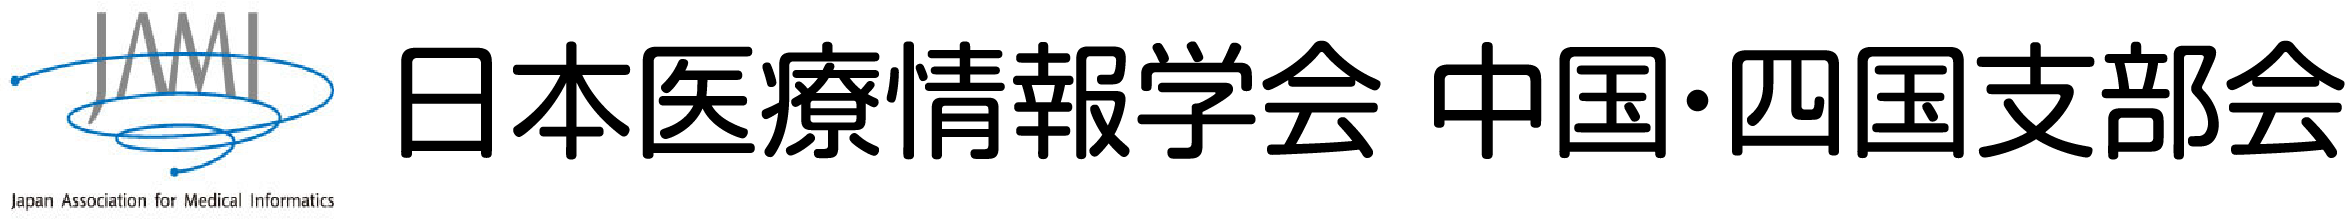 日本医療情報学会中国四国支部のロゴ